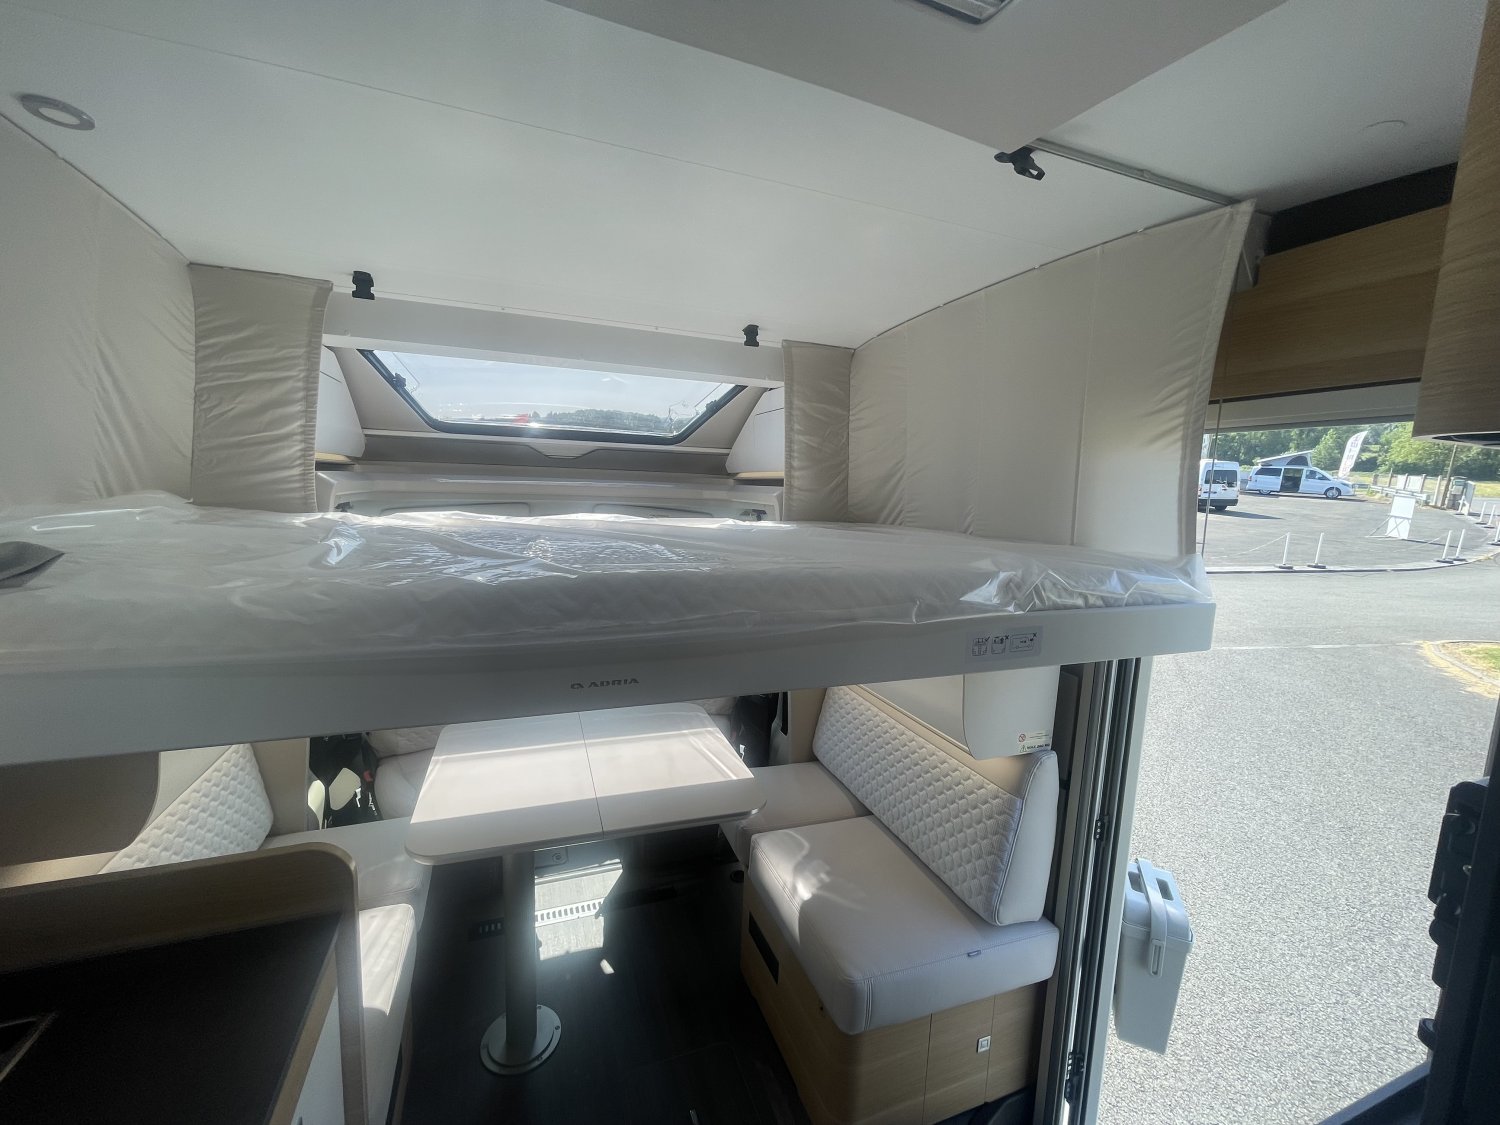 Antoine Caravanes et Camping Car MATRIX PLUS 670 DL Adria